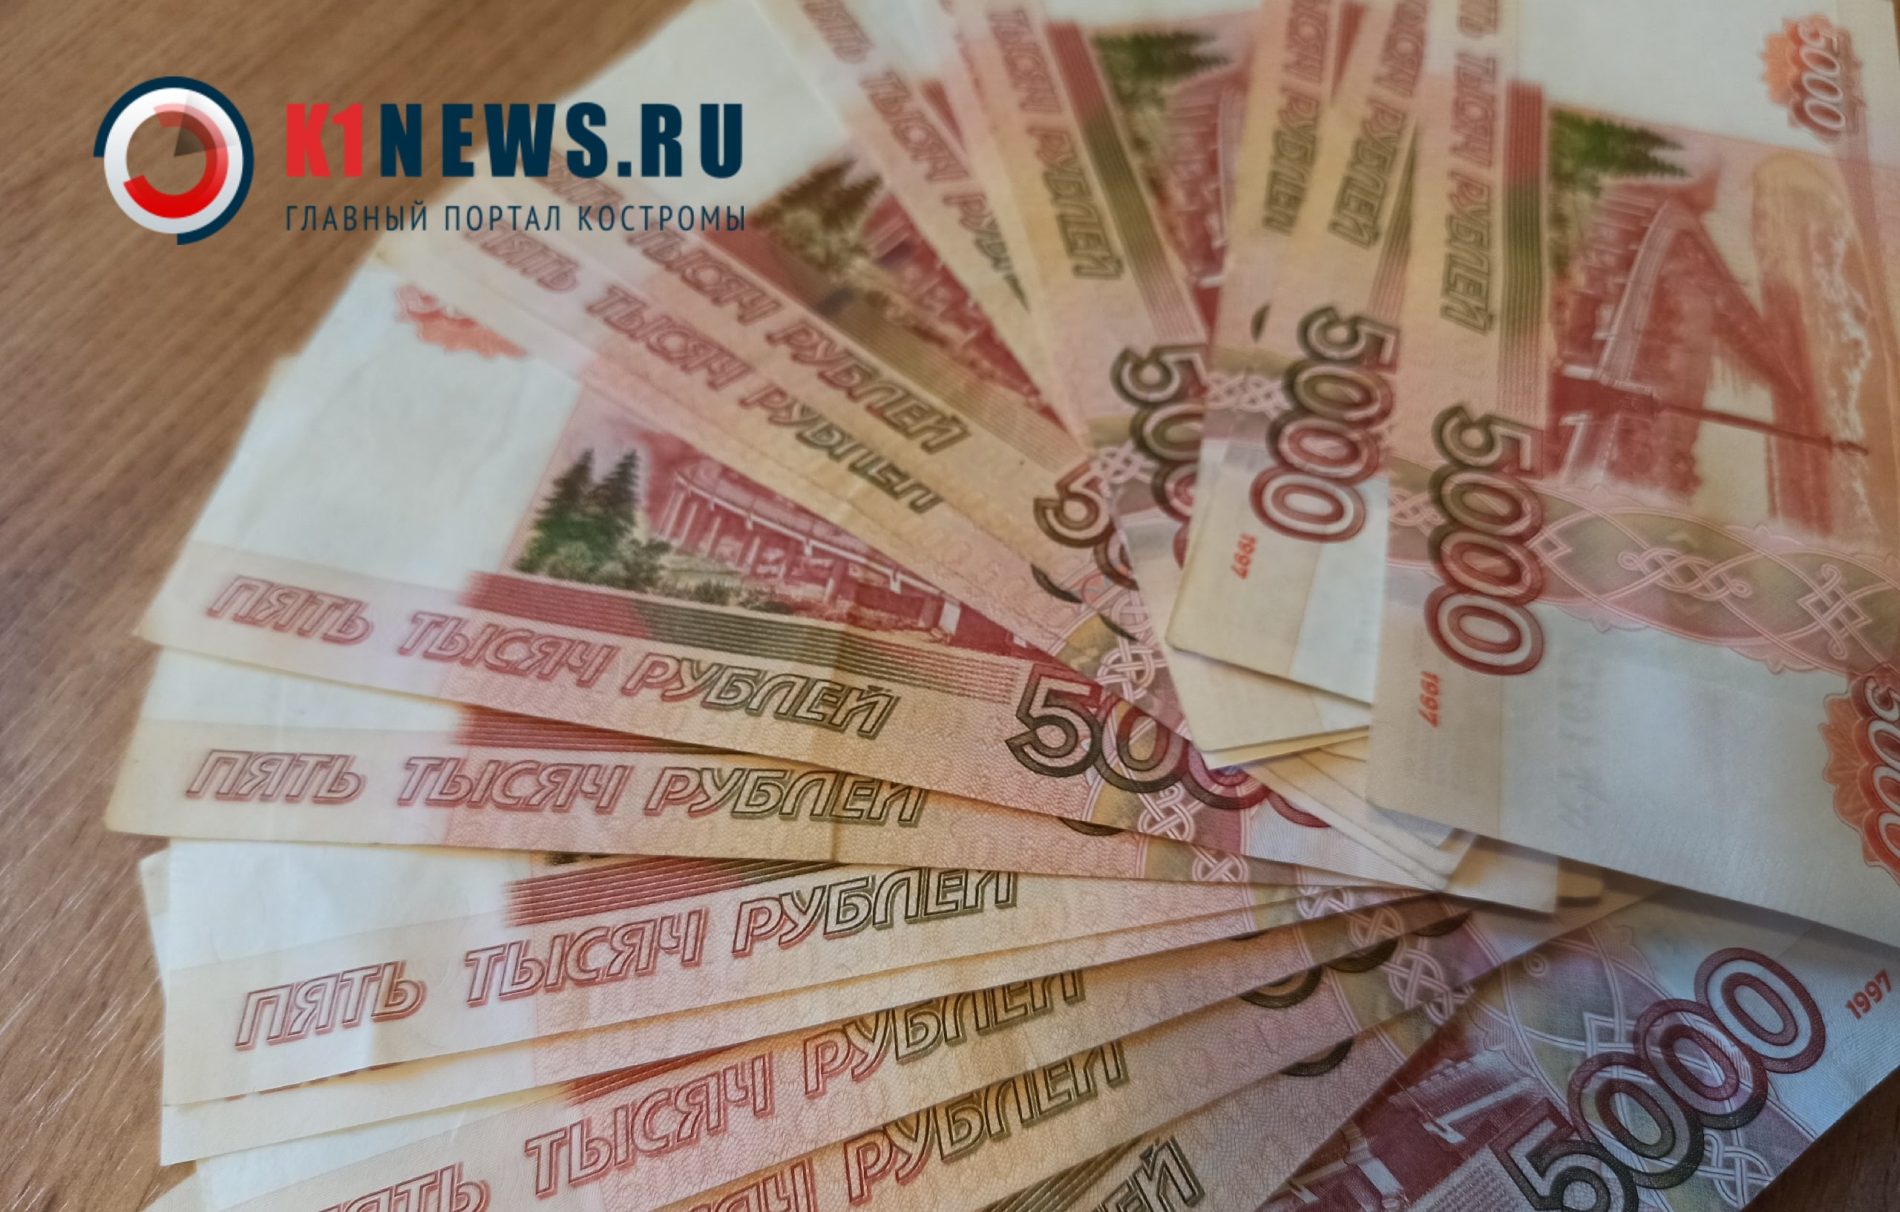 Аферисты из Москвы обобрали костромскую пенсионерку